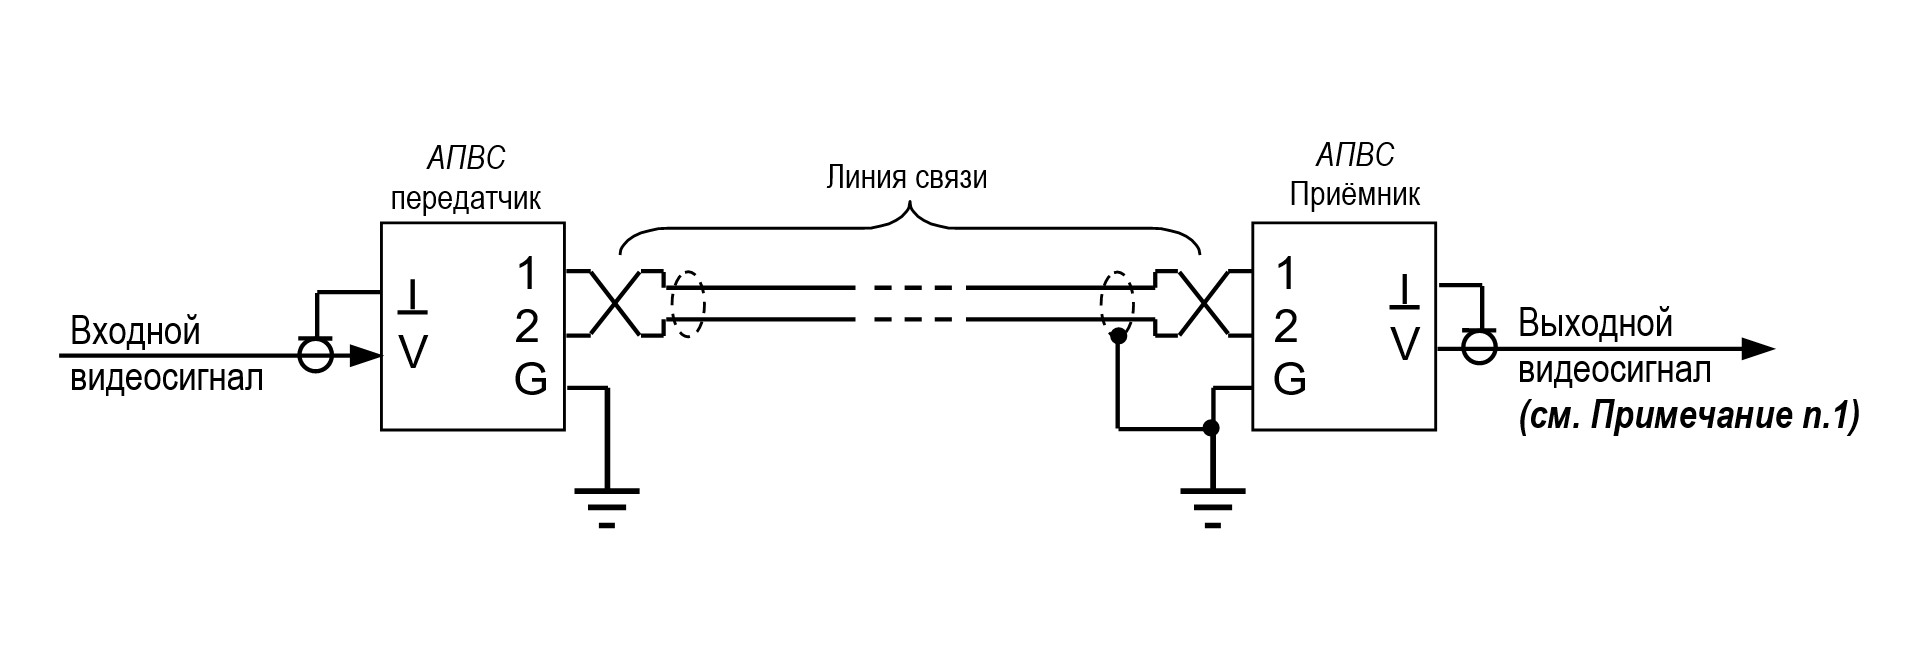 Схема включения АПВС-5 AHD с заземлением и передатчика и приёмника